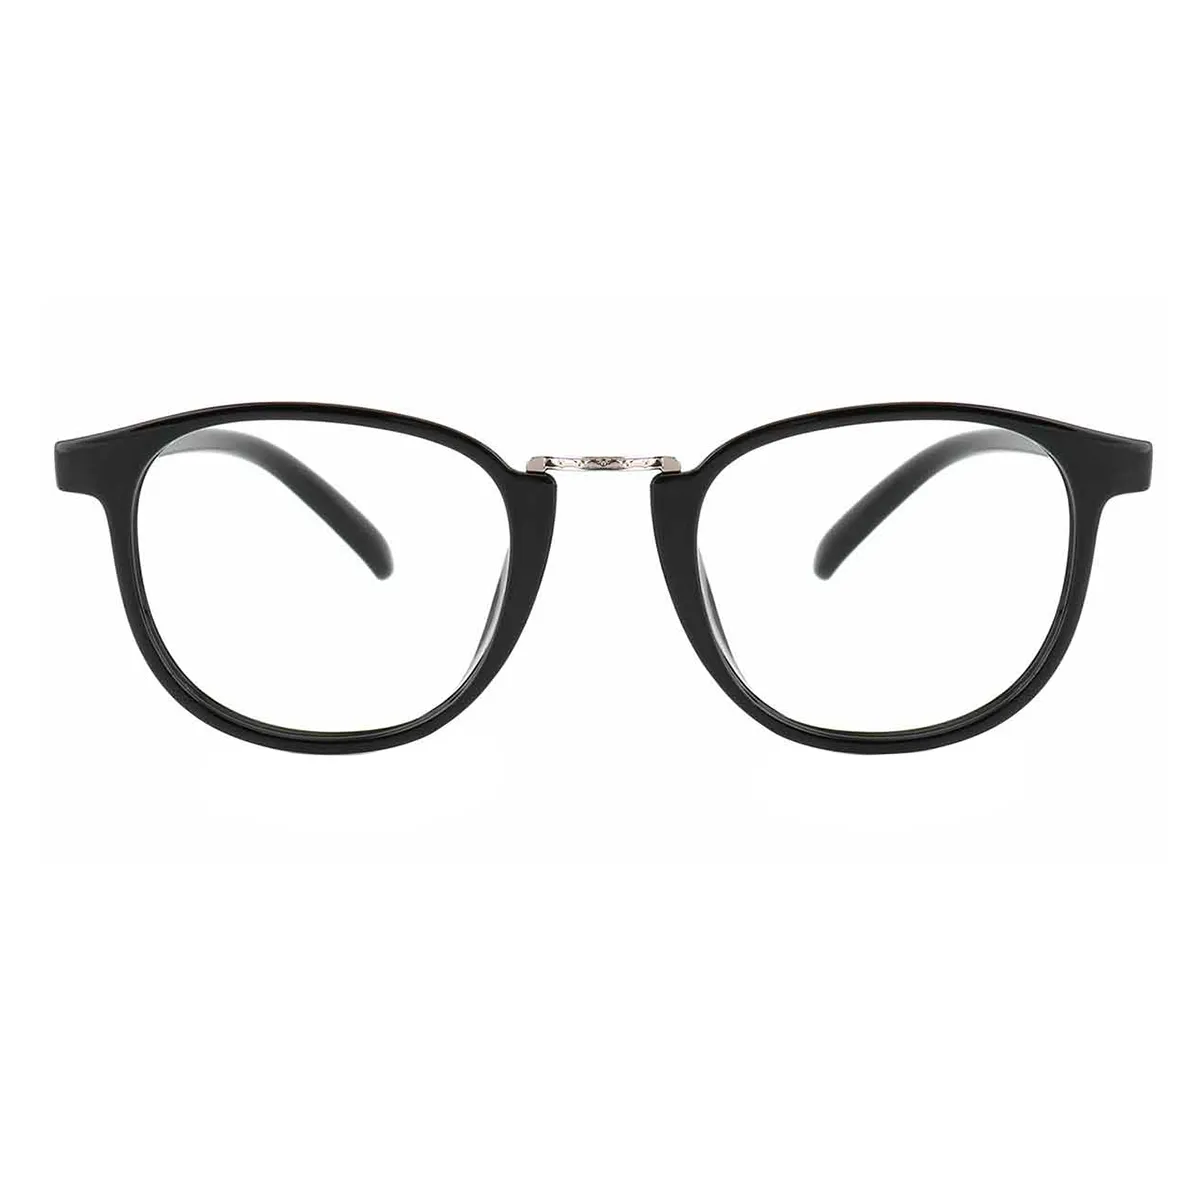 Fashion Oval Black  Eyeglasses for Women & Men